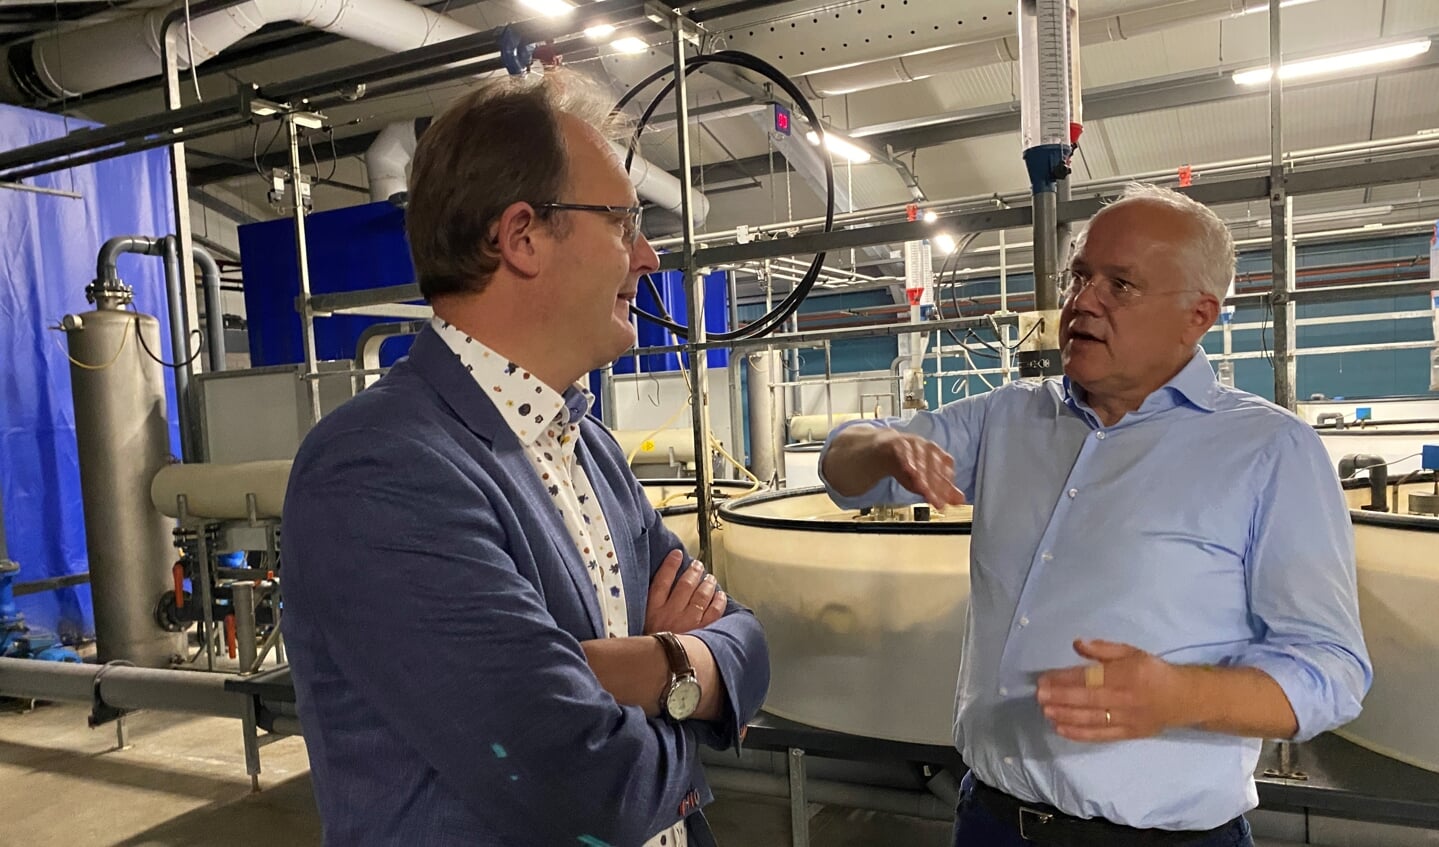 H Europarlementariër Bert-Jan Ruissen (SGP) in gesprek met William Swinkels, CEO en mede-eigenaar van de Niijvis Groep. De Nijvis Groep is uitgegroeid tot een groep van kwekerijen (tot met een kwekerij in Marokko), rokerijen en vishandel; alles met de focus op paling. Swinkels is blij met de bestaande EU-verordening voor paling. ,,Mede hierdoor is er meer paling en tegelijk meer visserij, een win-win dus.’’ (Foto: Kees Bos)